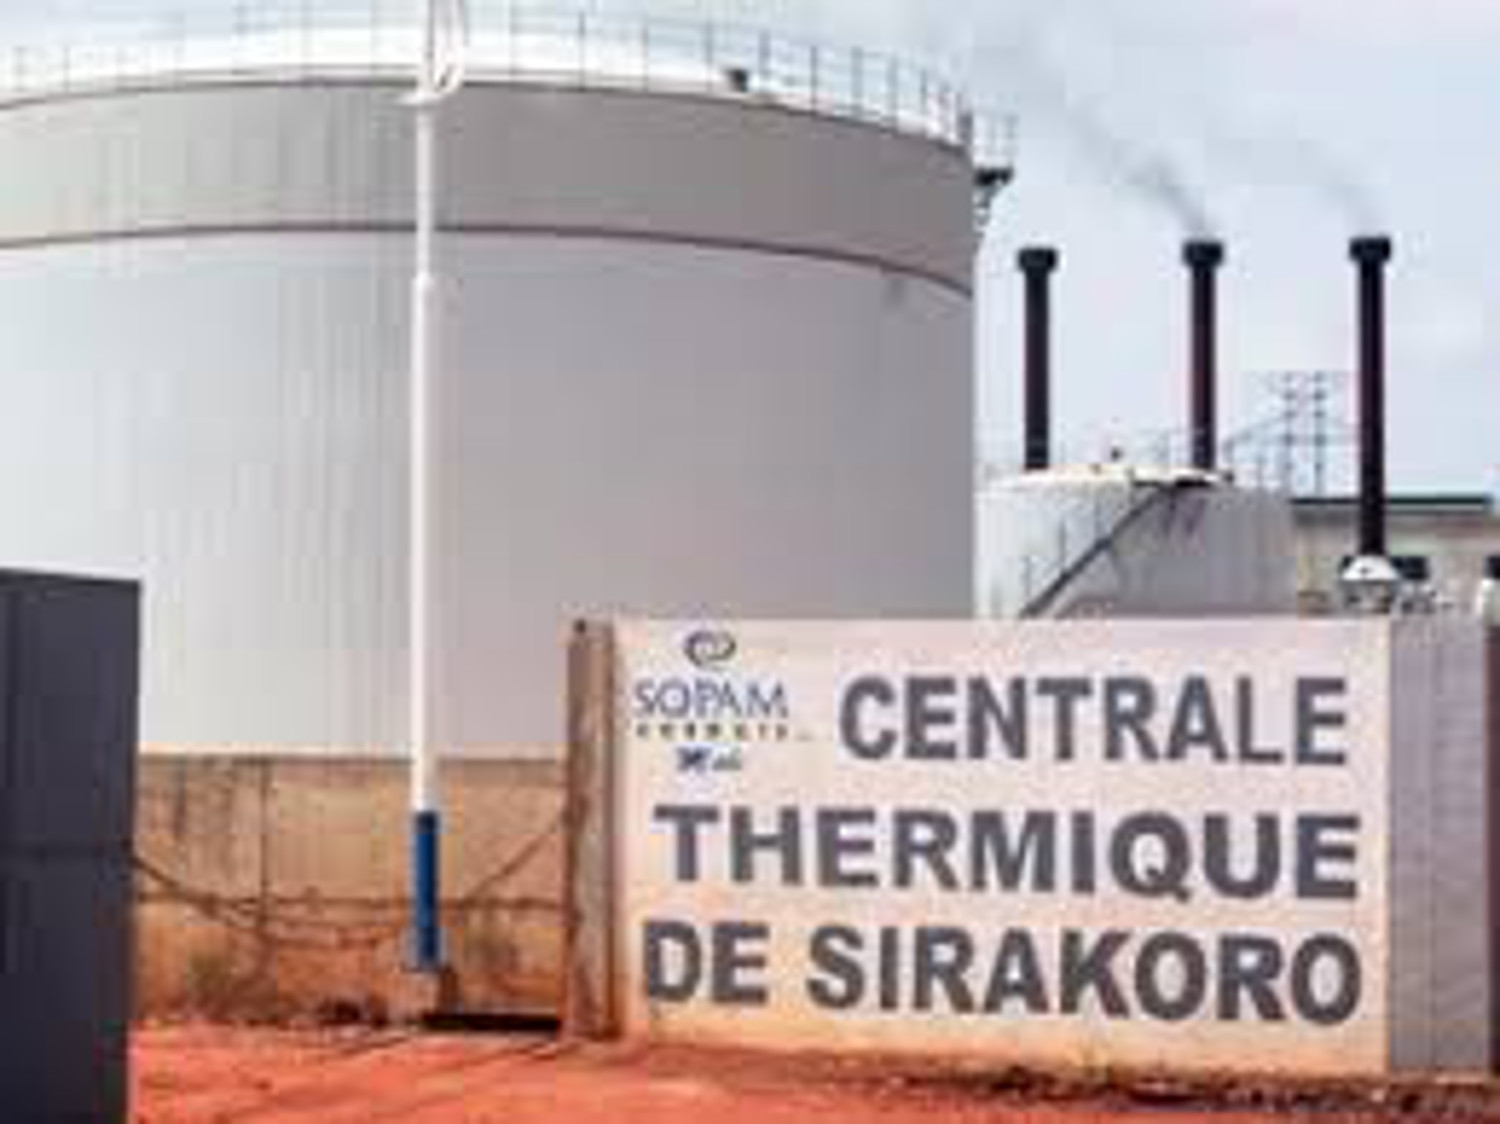 Mali : une centrale thermique pour améliorer l’accès à l’électricité